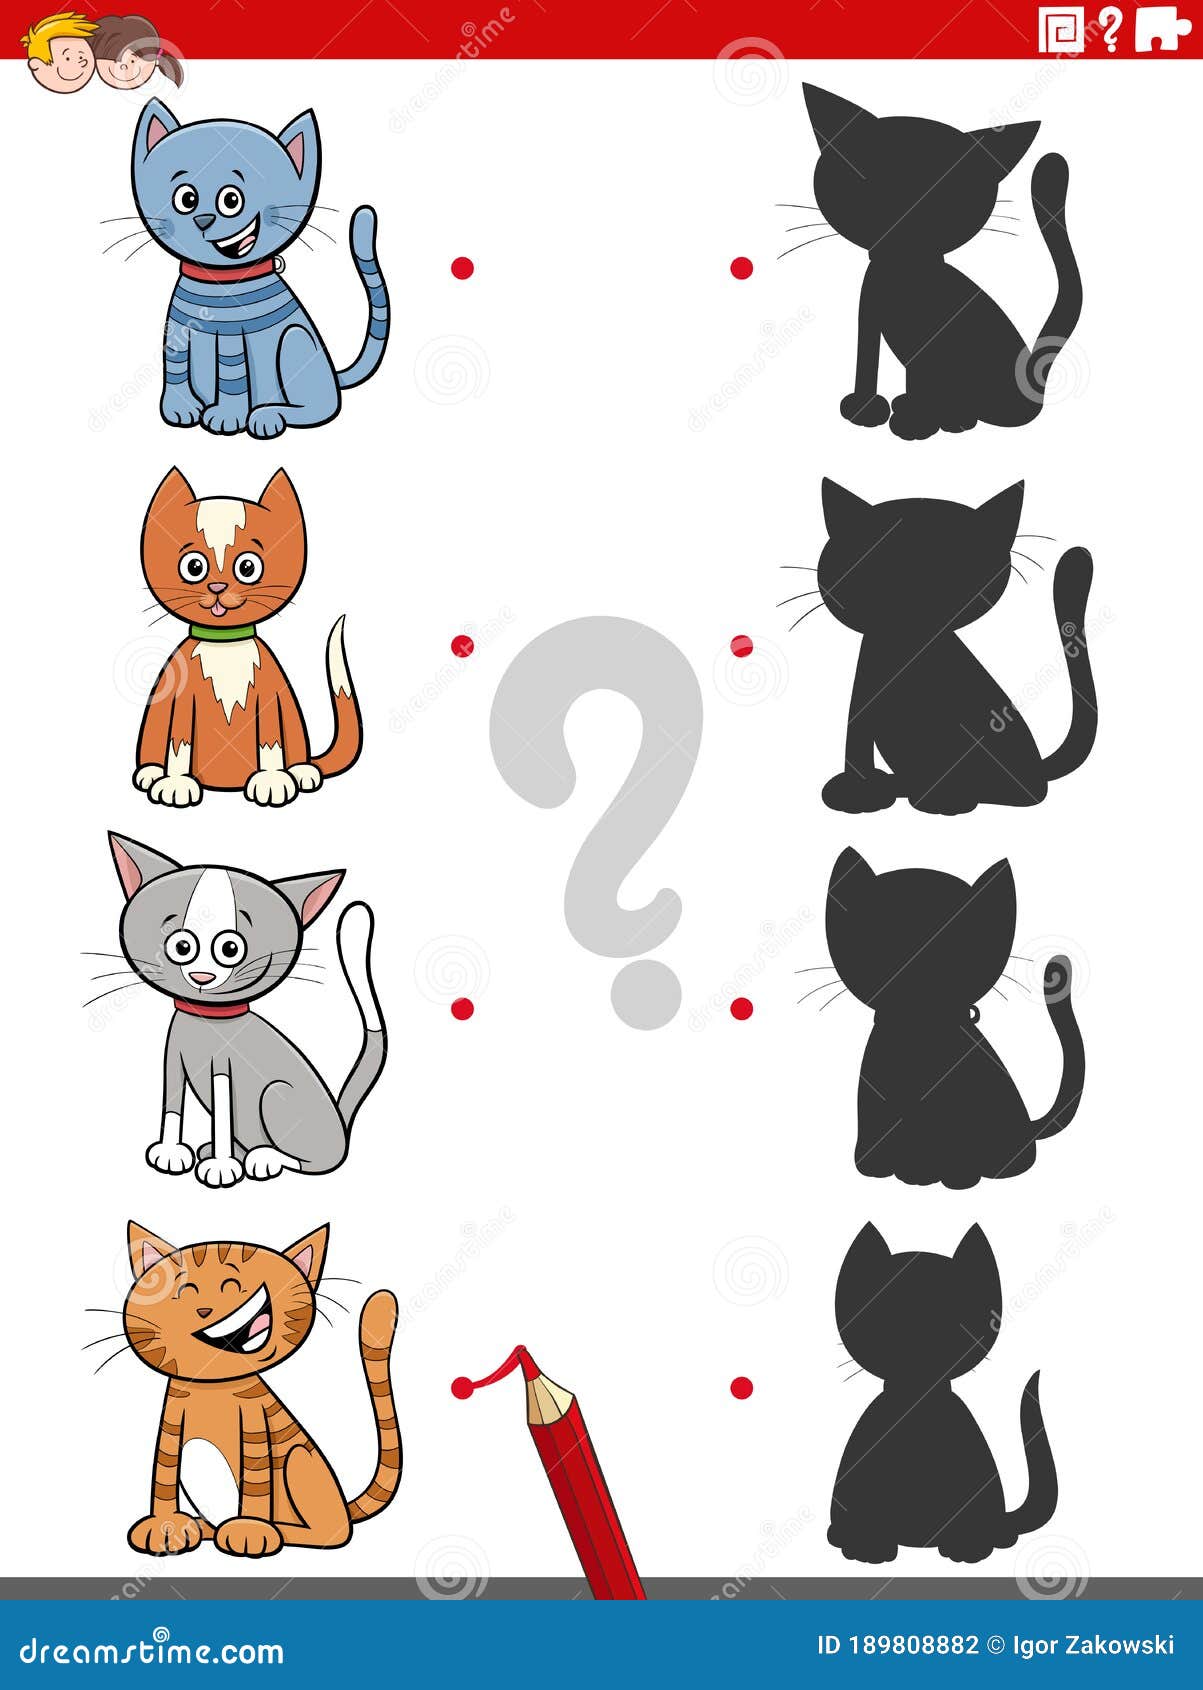 Eu espio jogos de crianças com gatos ou gatinhos engraçados fofos.  quebra-cabeça educacional quantos personagens de desenhos animados de gatos.  desenvolvimento da página de enigmas de habilidades com números. planilha  de matemática